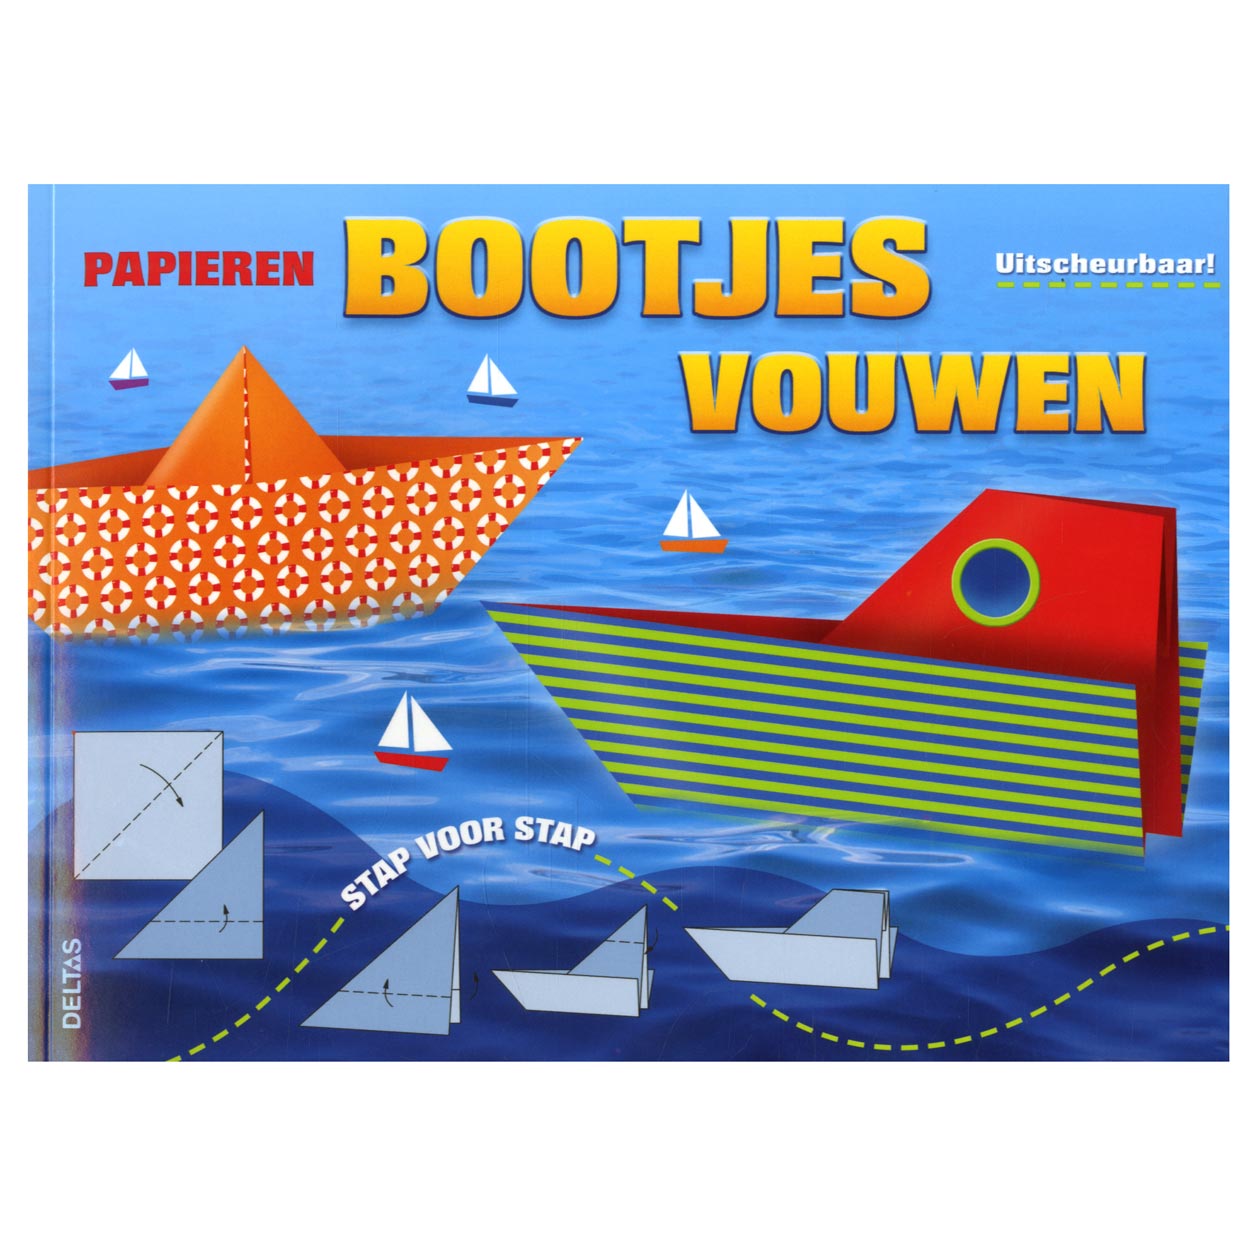 Papieren bootjes vouwen online kopen Lobbes.nl